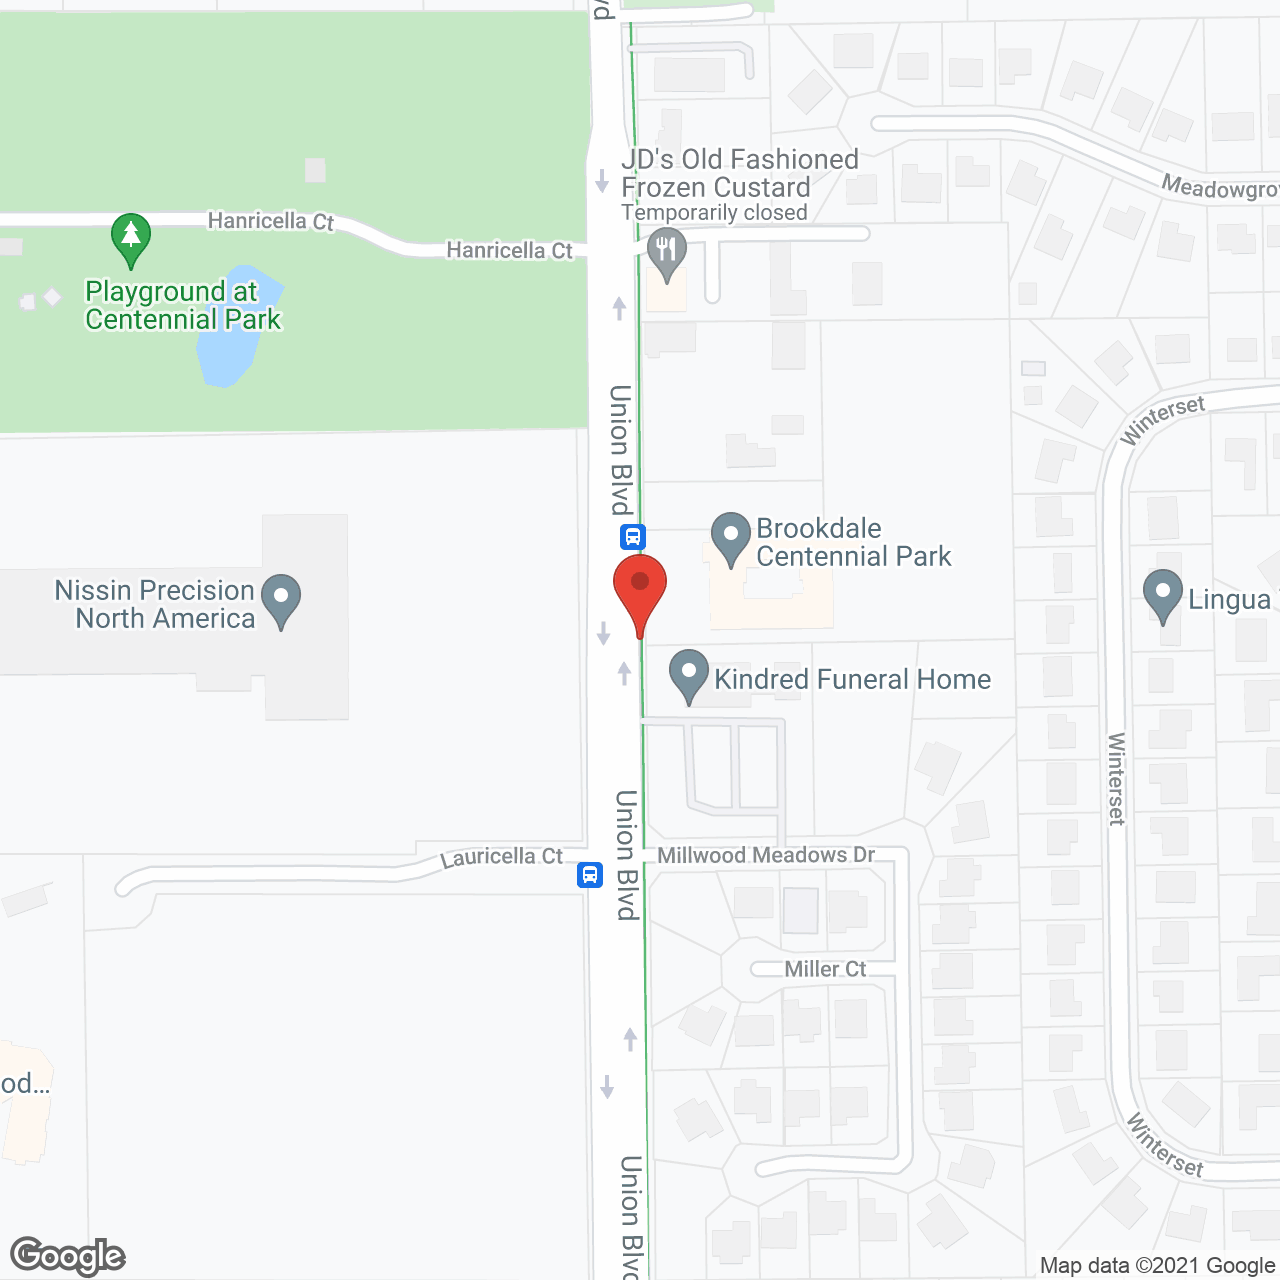 Brookdale Centennial Park in google map